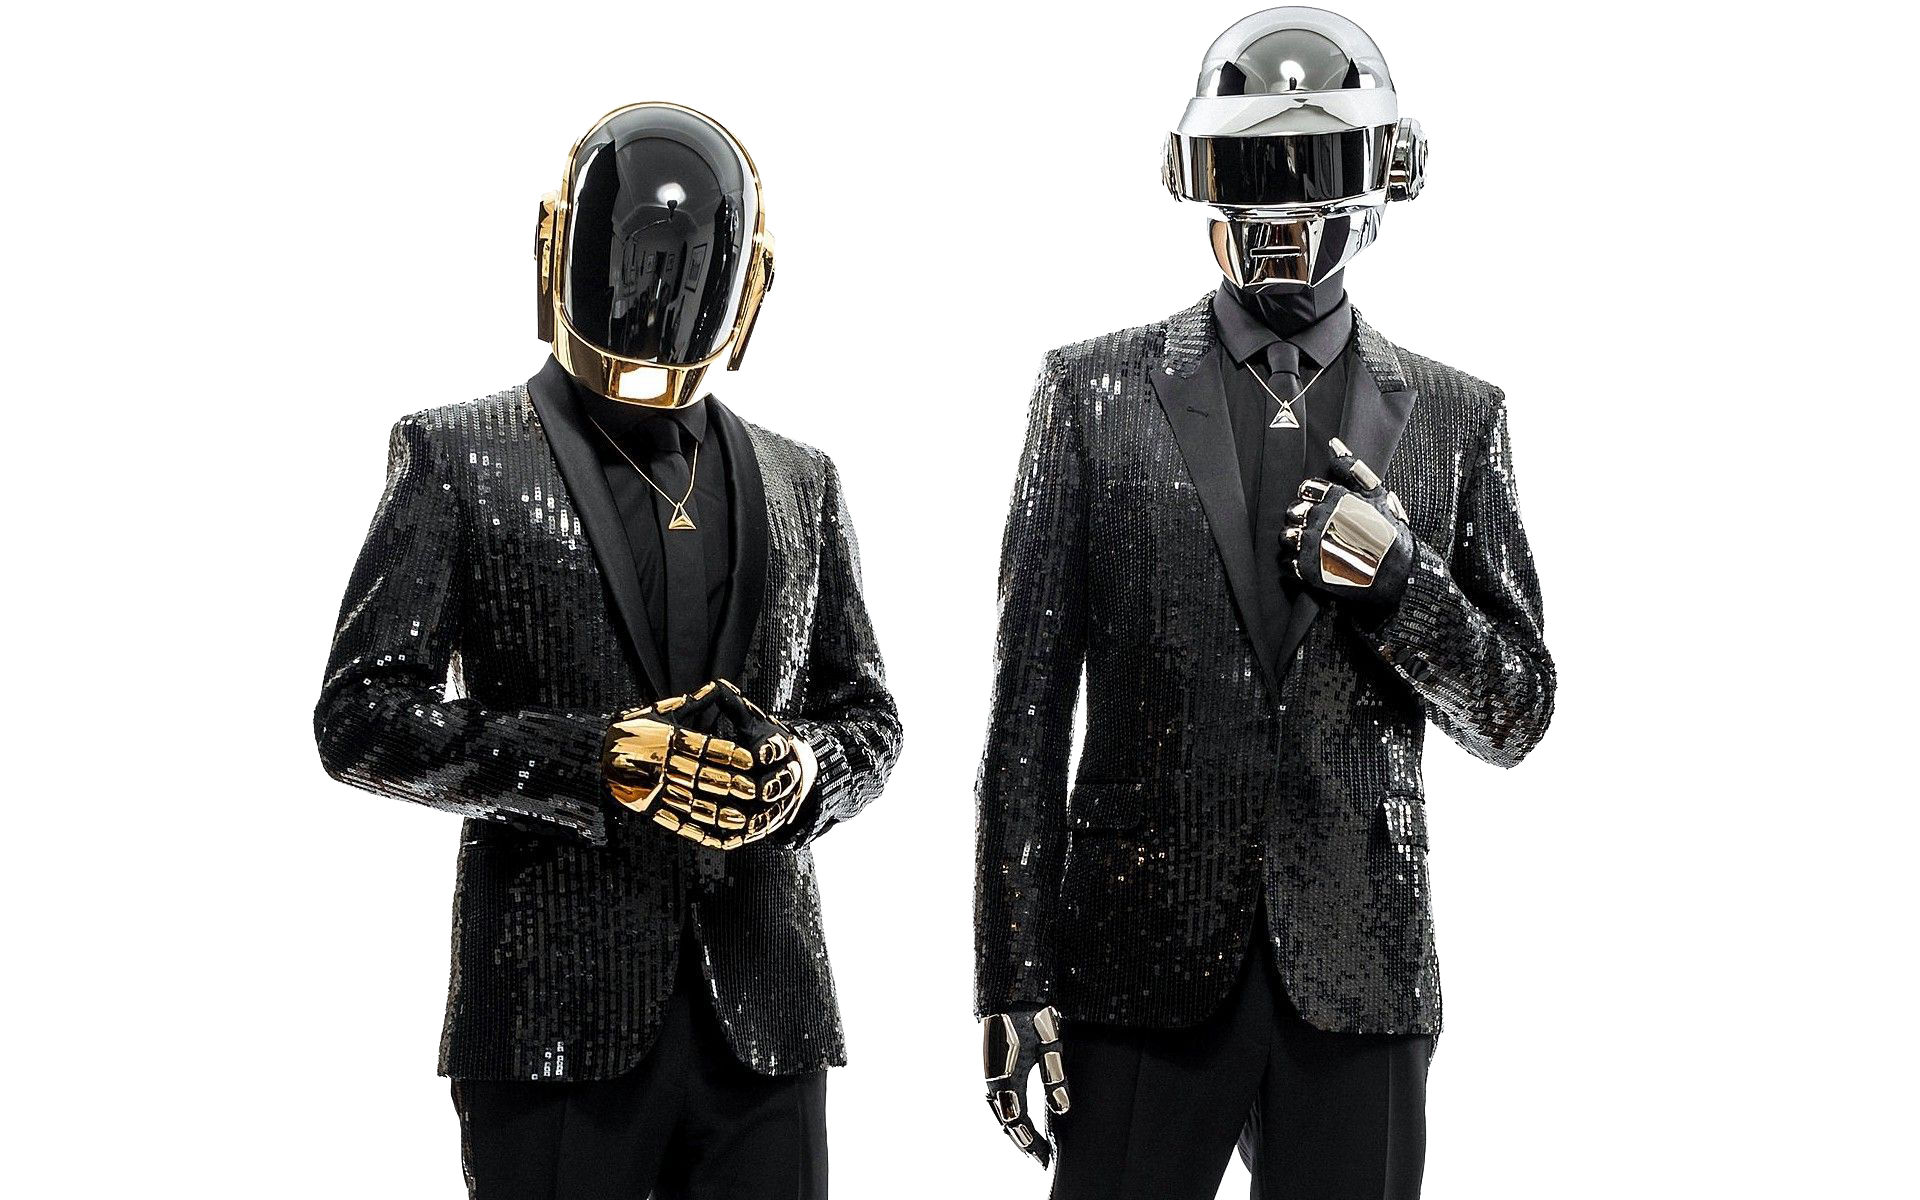 Daft Punk Image PNG Image